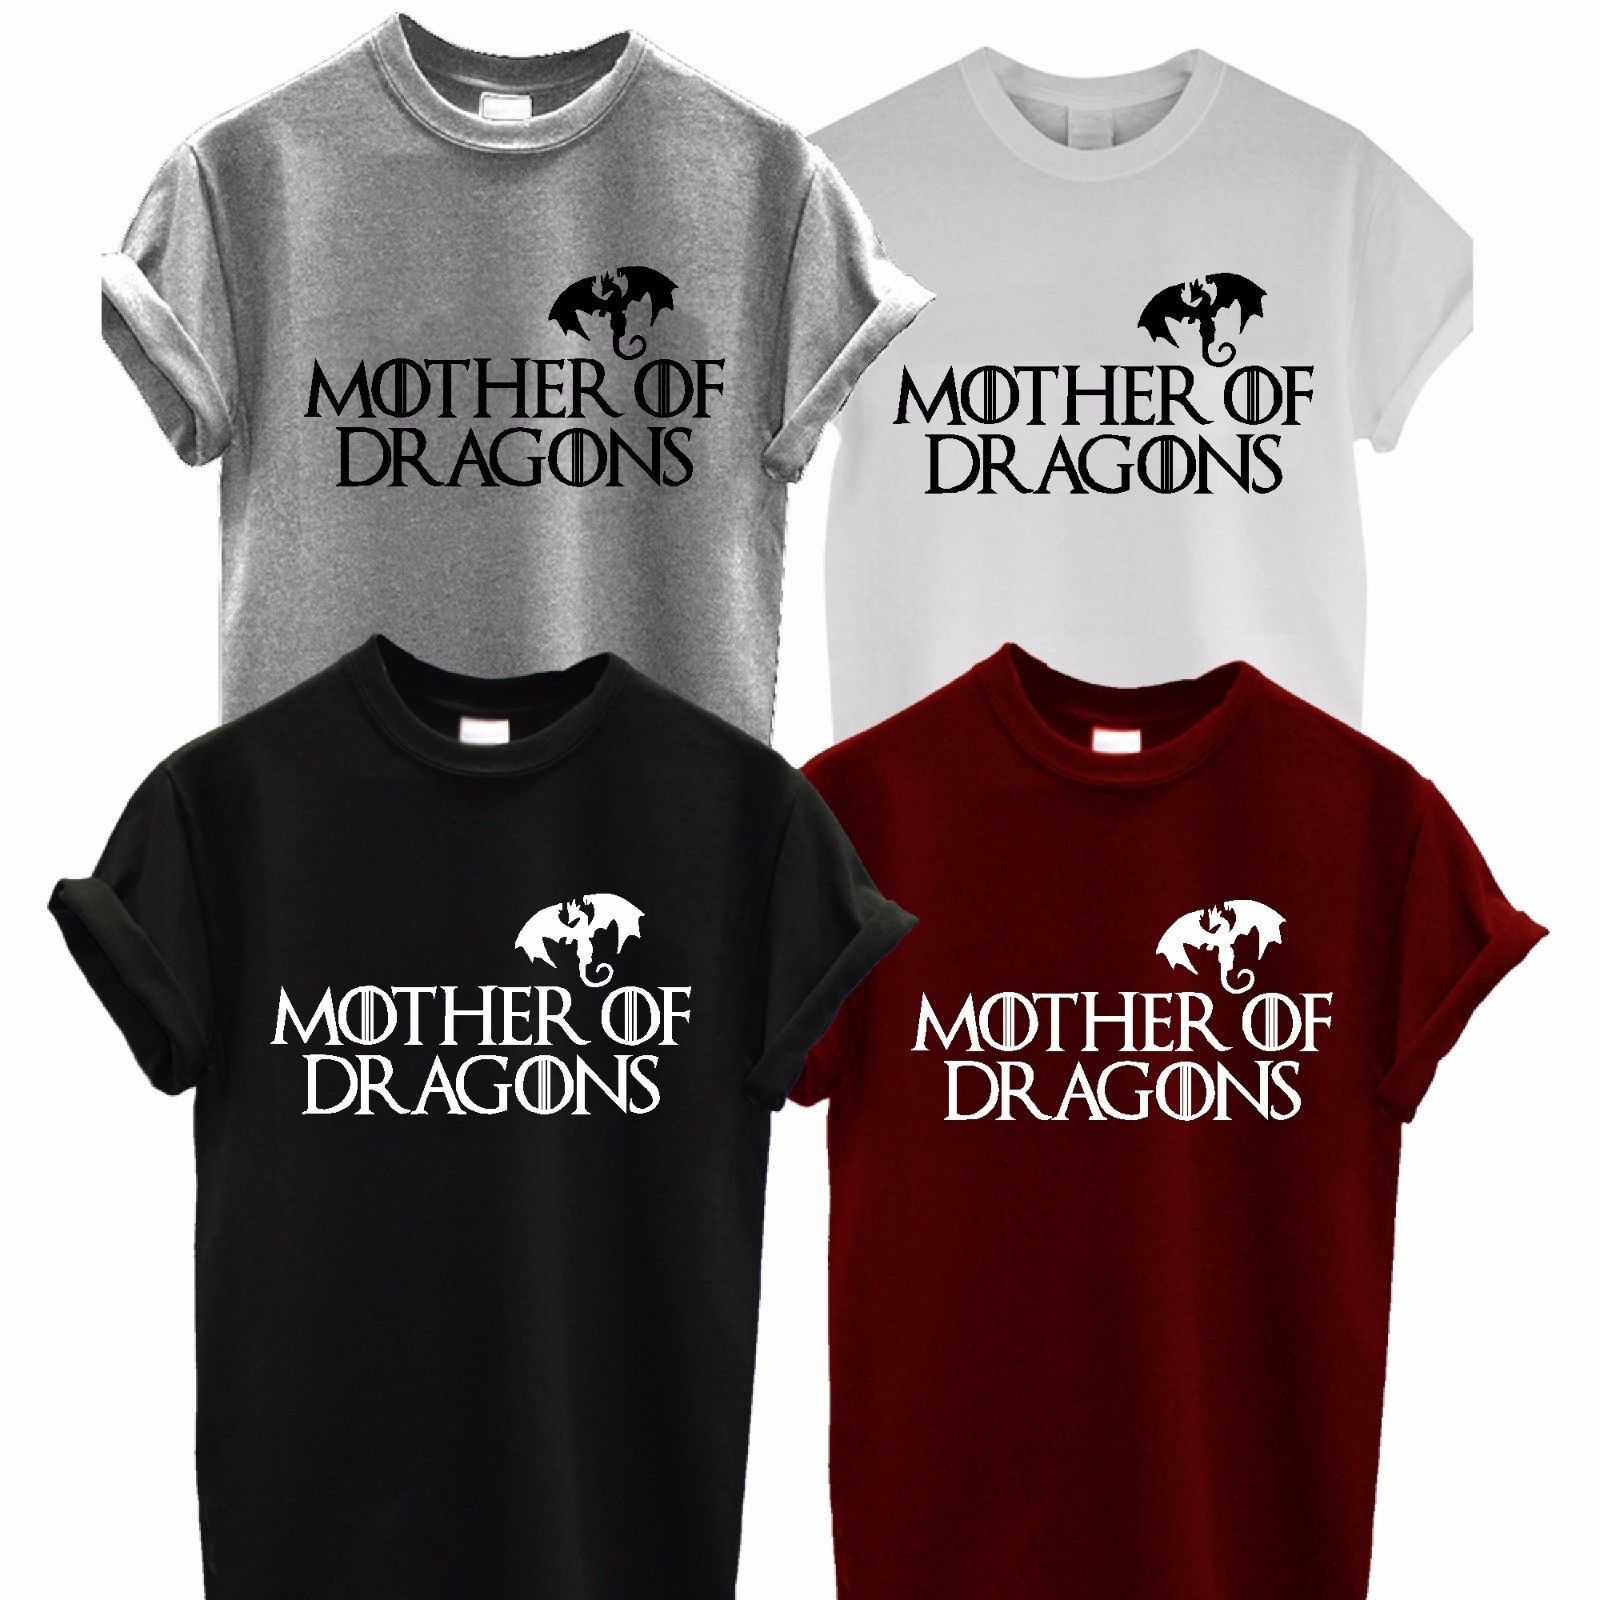 ZCYTIM Camiseta Juego de Tronos Madre del dragón   Camisa Dragón Fuego Piel de Invierno Moda para Mujer Camiseta de los   Fans Regalo